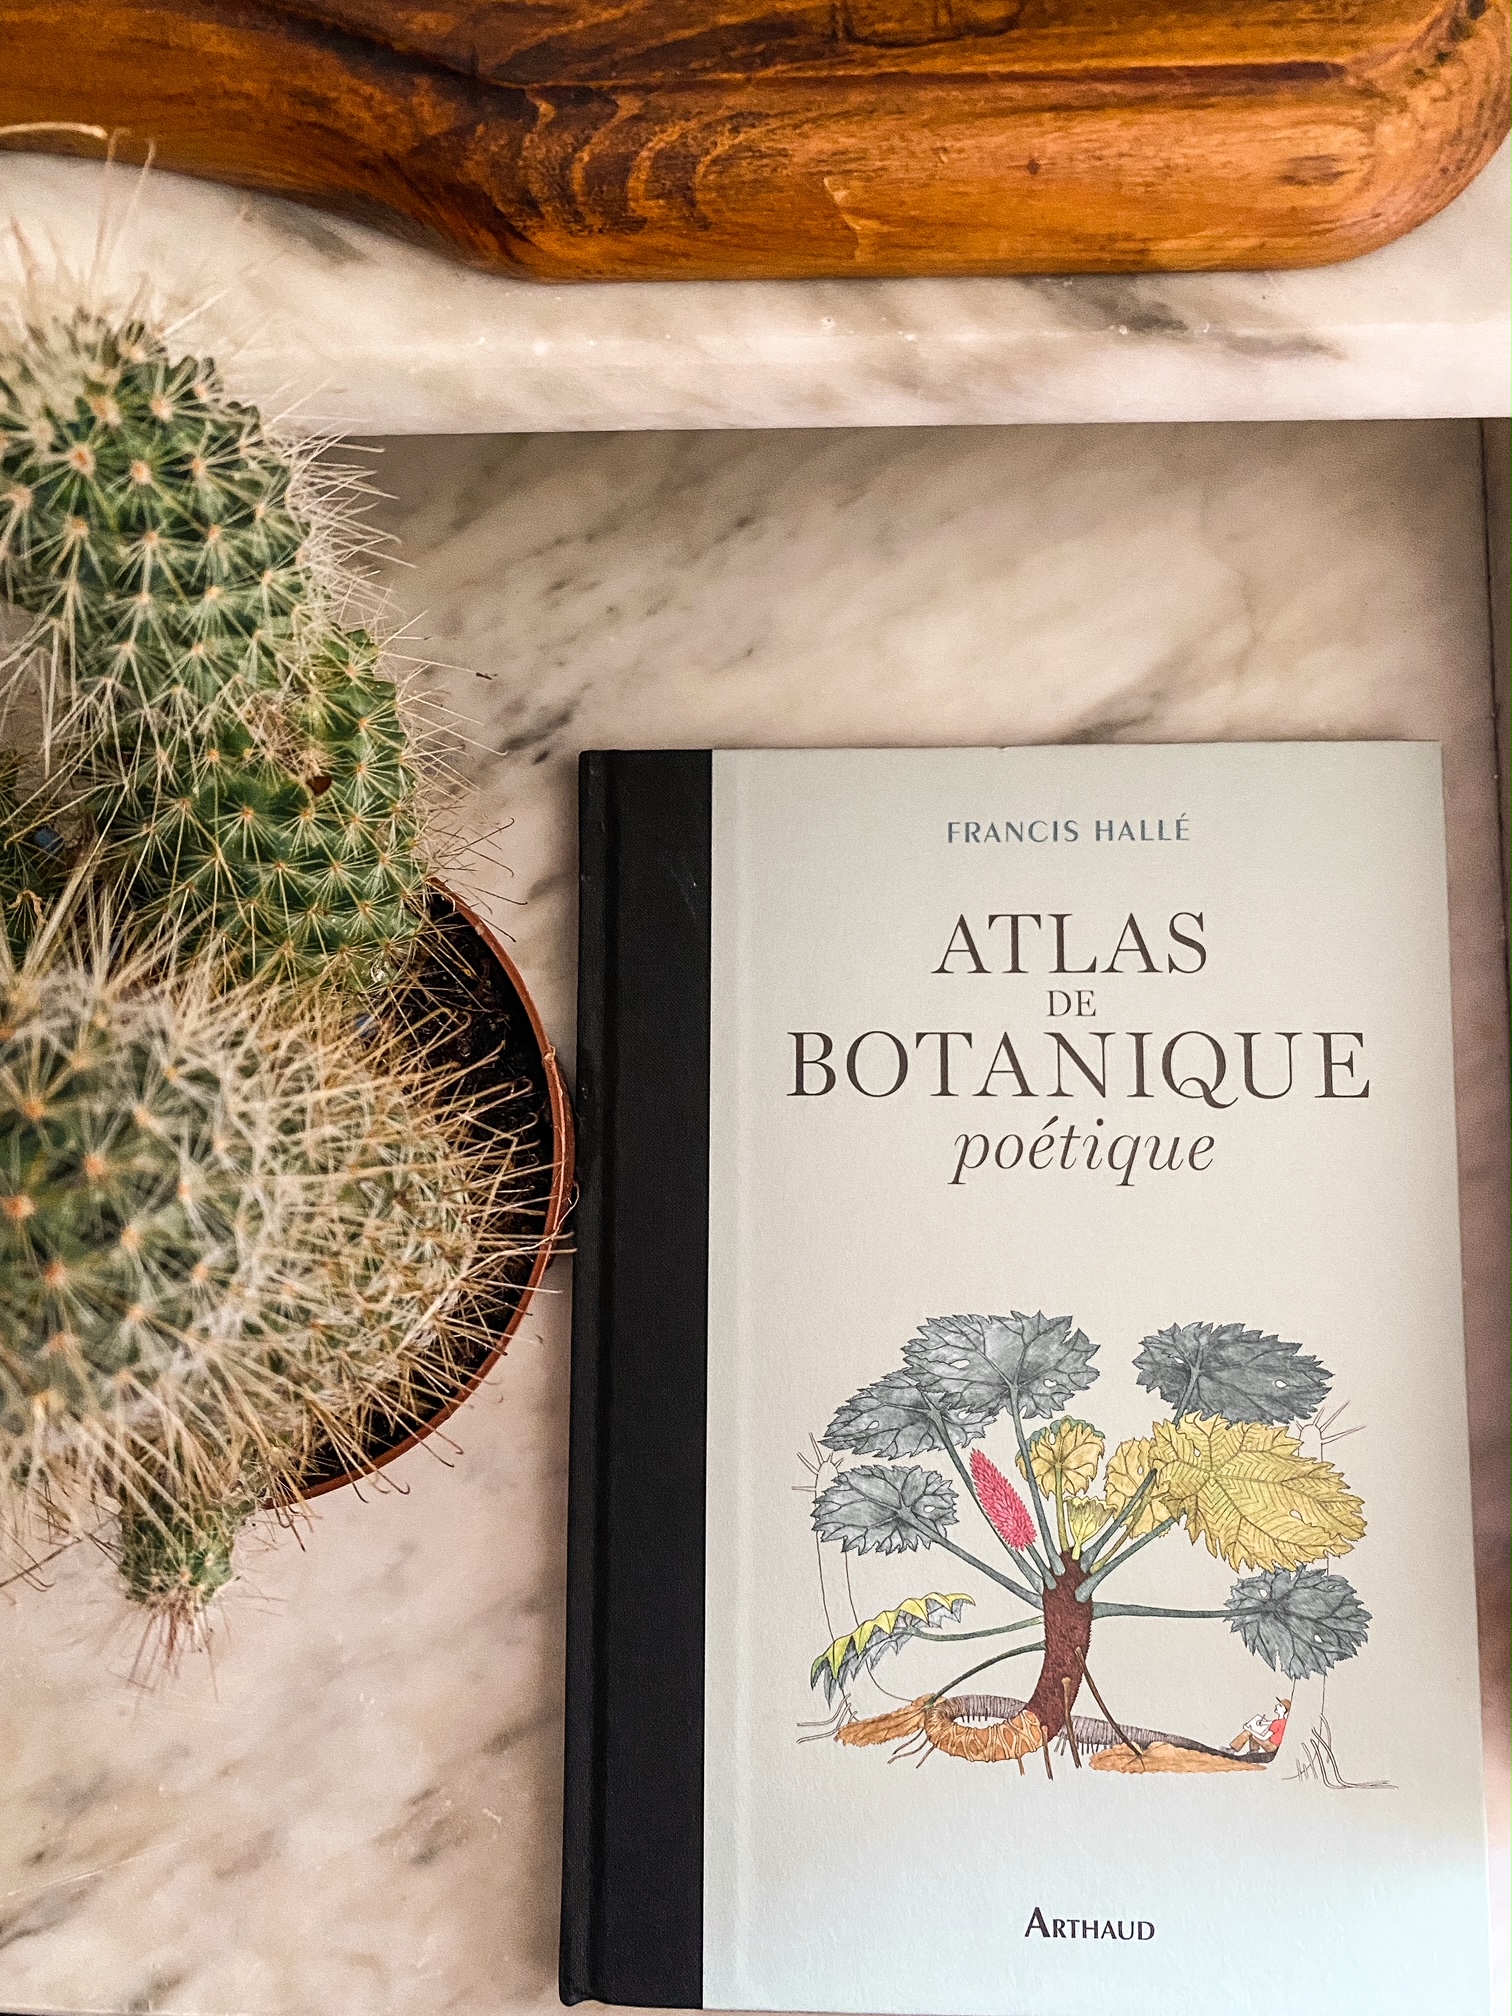 Atlas de botanique poétique, de Francis Hallé : toutes les merveilles de la nature